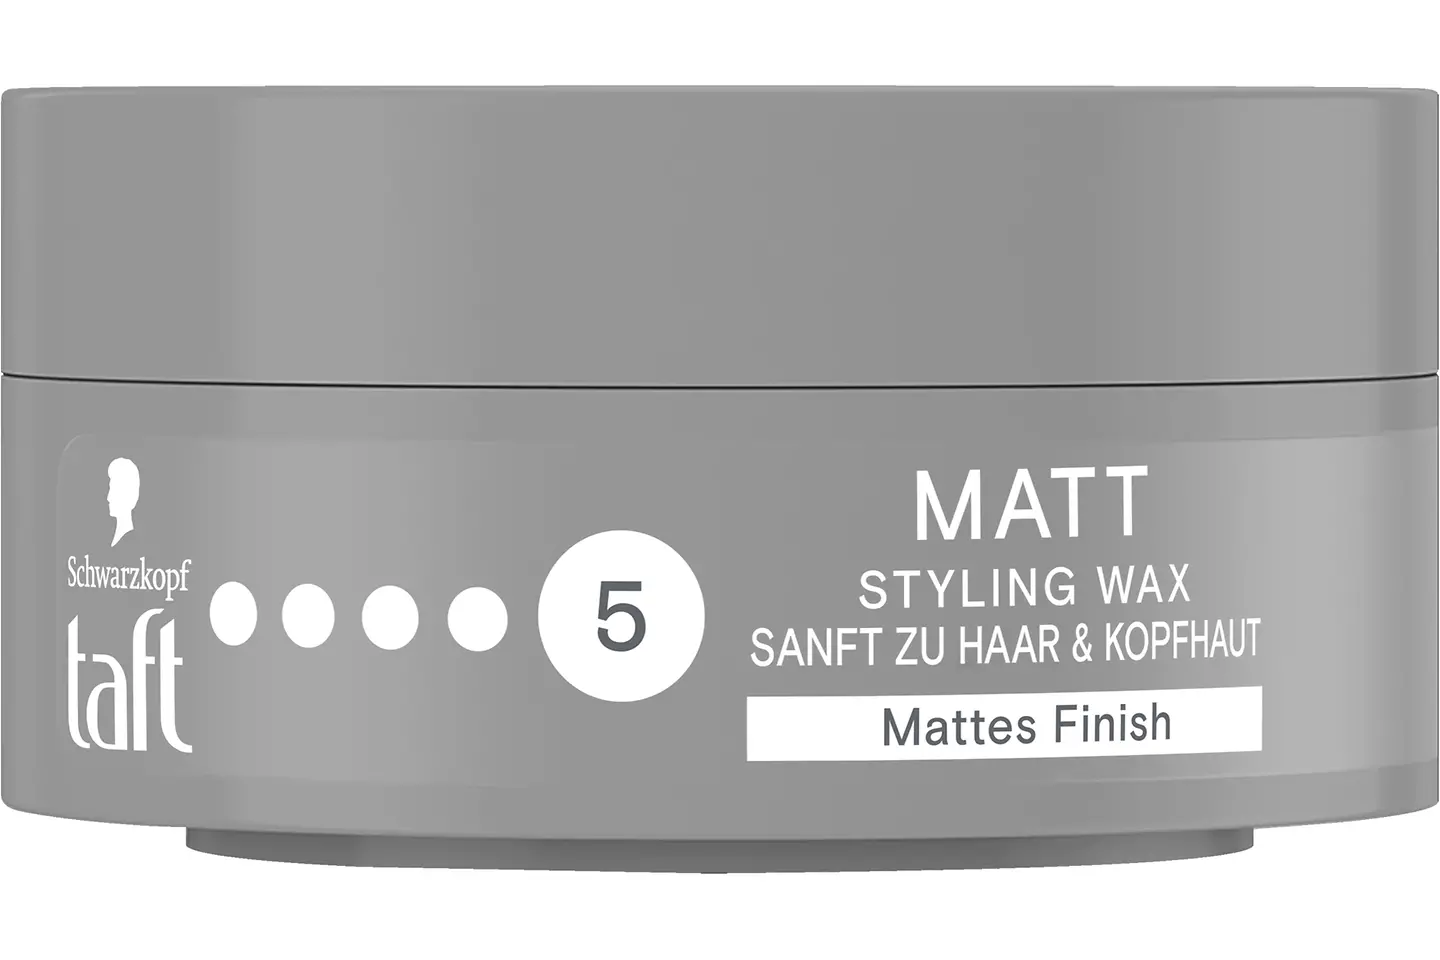 
Taft Wax Matte